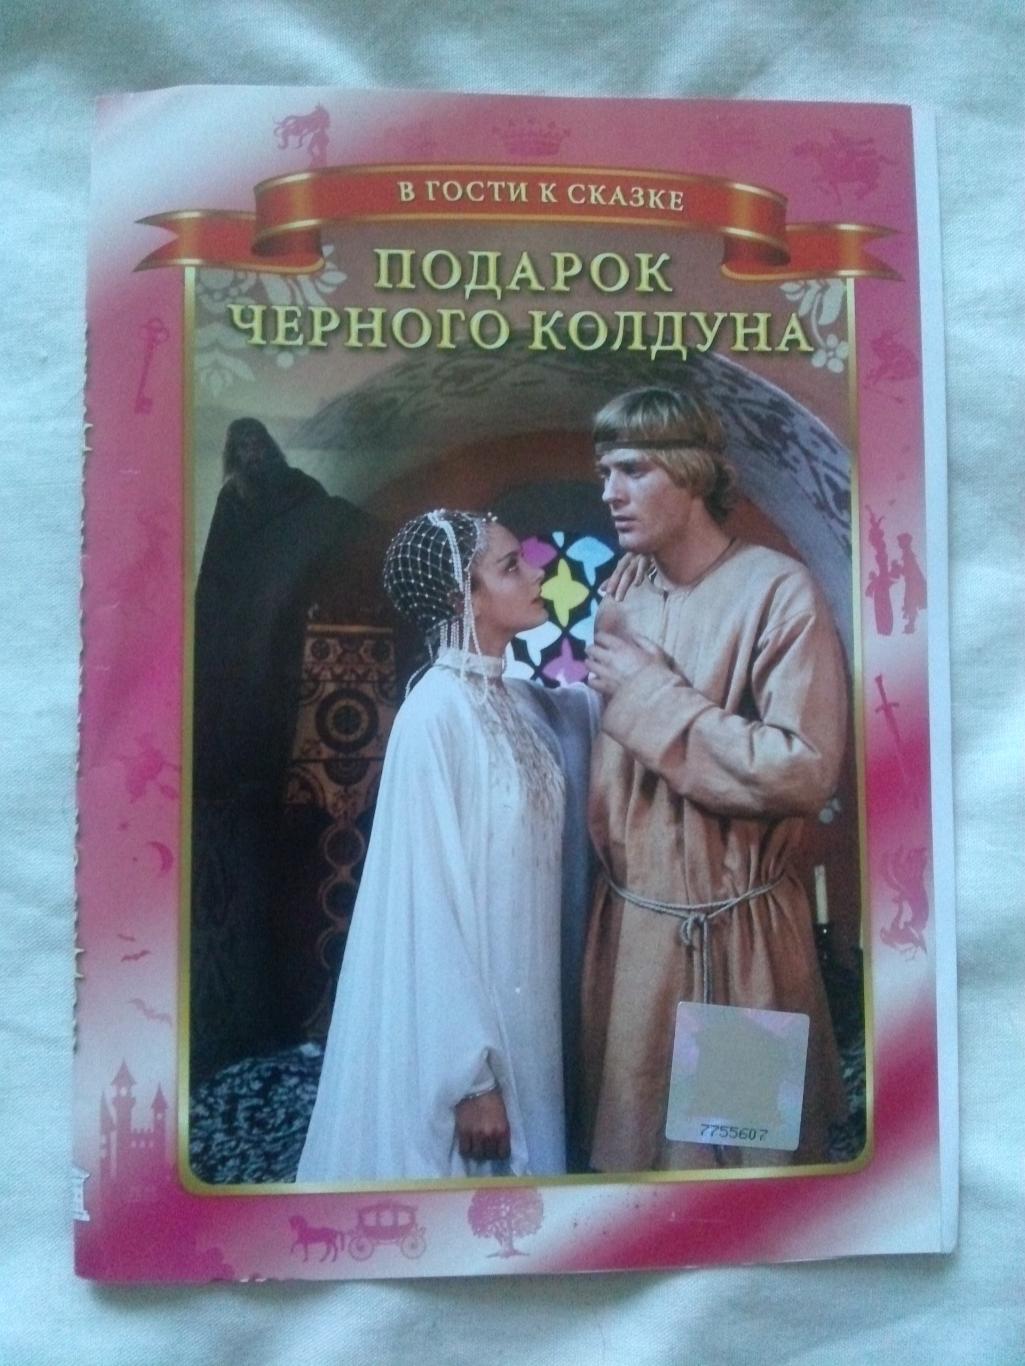 DVD Подарок черного колдуна 1978 г. Сказка (фильмы СССР) новый , лицензия